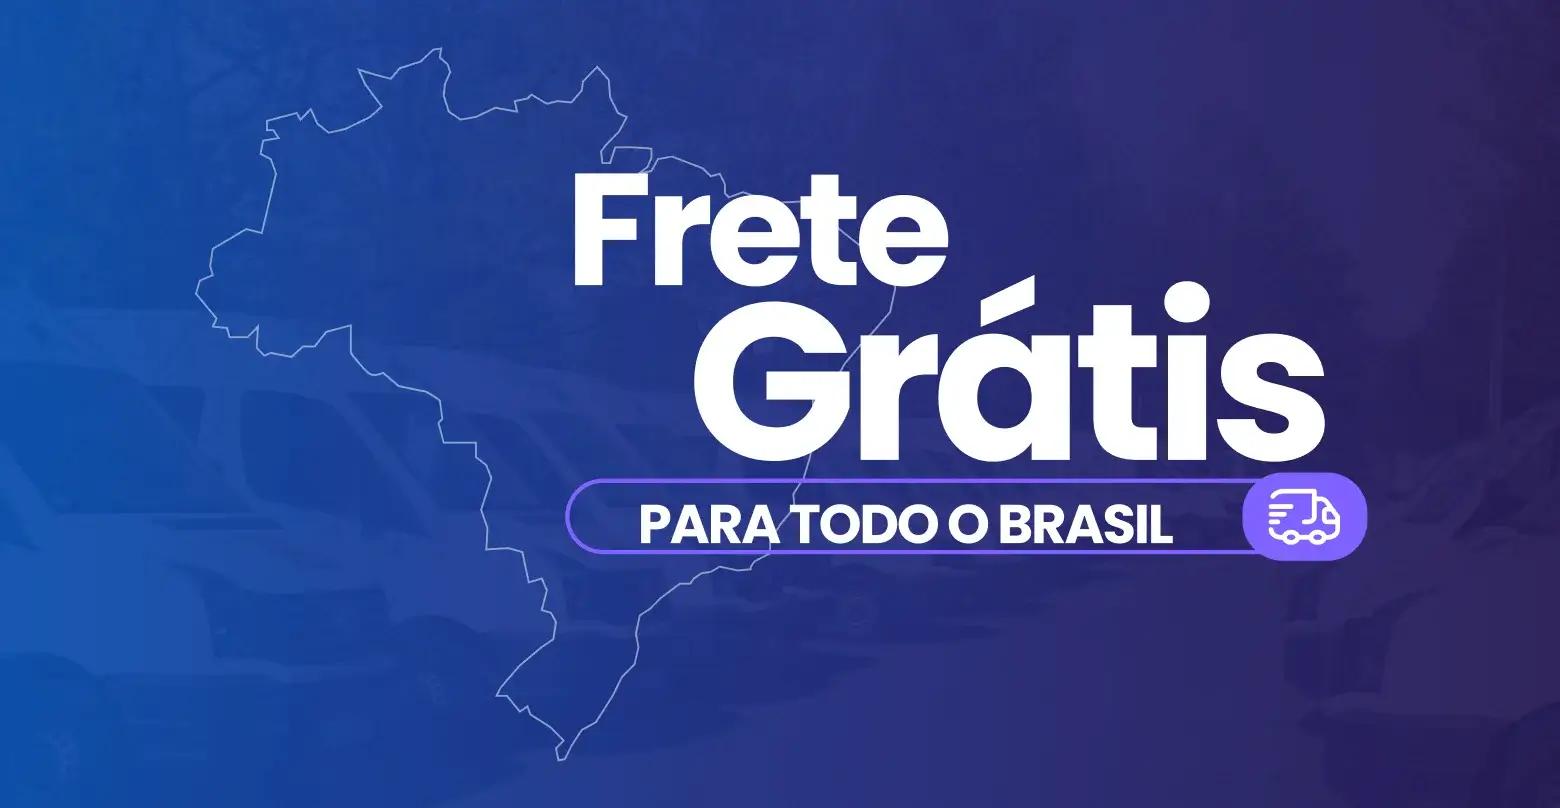 Frete grátis para todo o Brasil